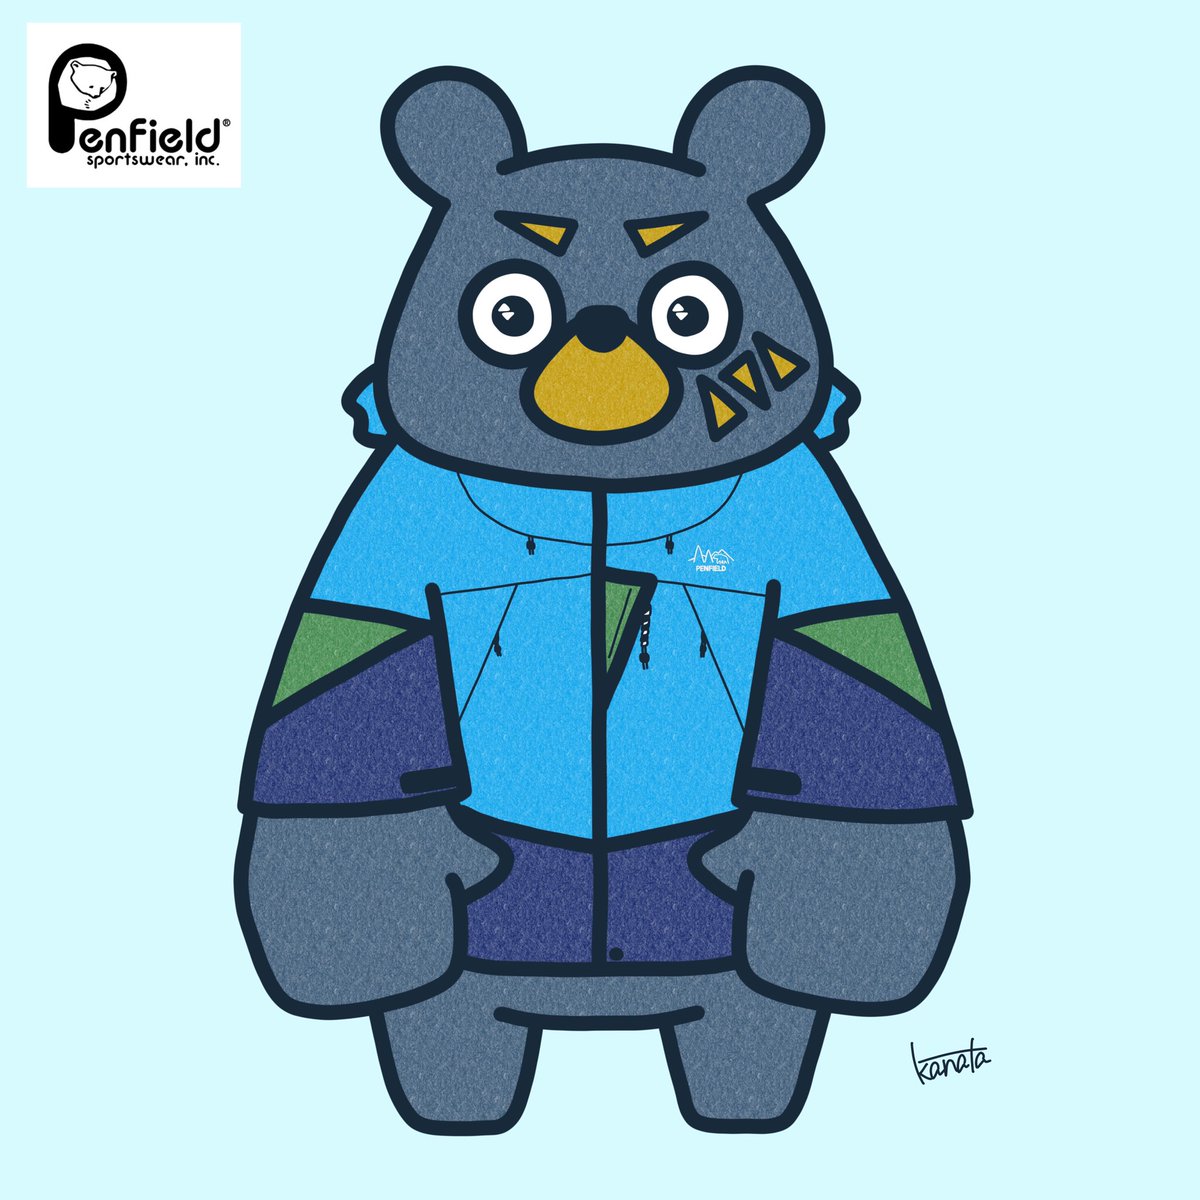 Kanata 熊が熊ロゴのブランド着てみた Penfieldさんのレインパーカーです うちの熊に着せてみました Penfield ペンフィールド くま お洒落 服 イラスト イラスト好きな人と繋がりたい